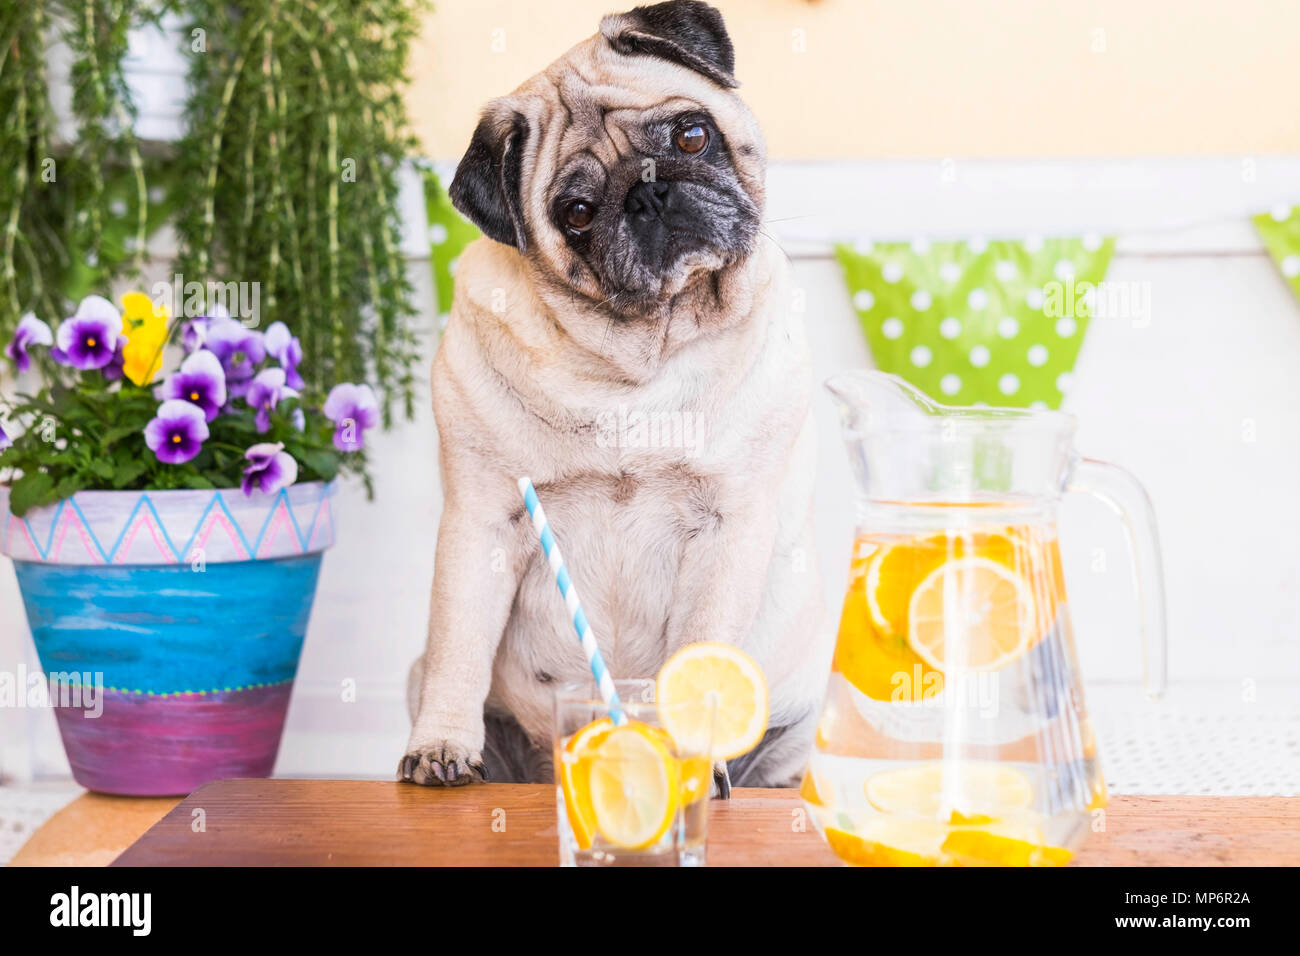 Tier Hund Mops vor eine gesunde Limonade machen Ernährung und Gewicht  verloren. Ausdruck mit Zweifeln über das Essen. outdoor Szene  Stockfotografie - Alamy